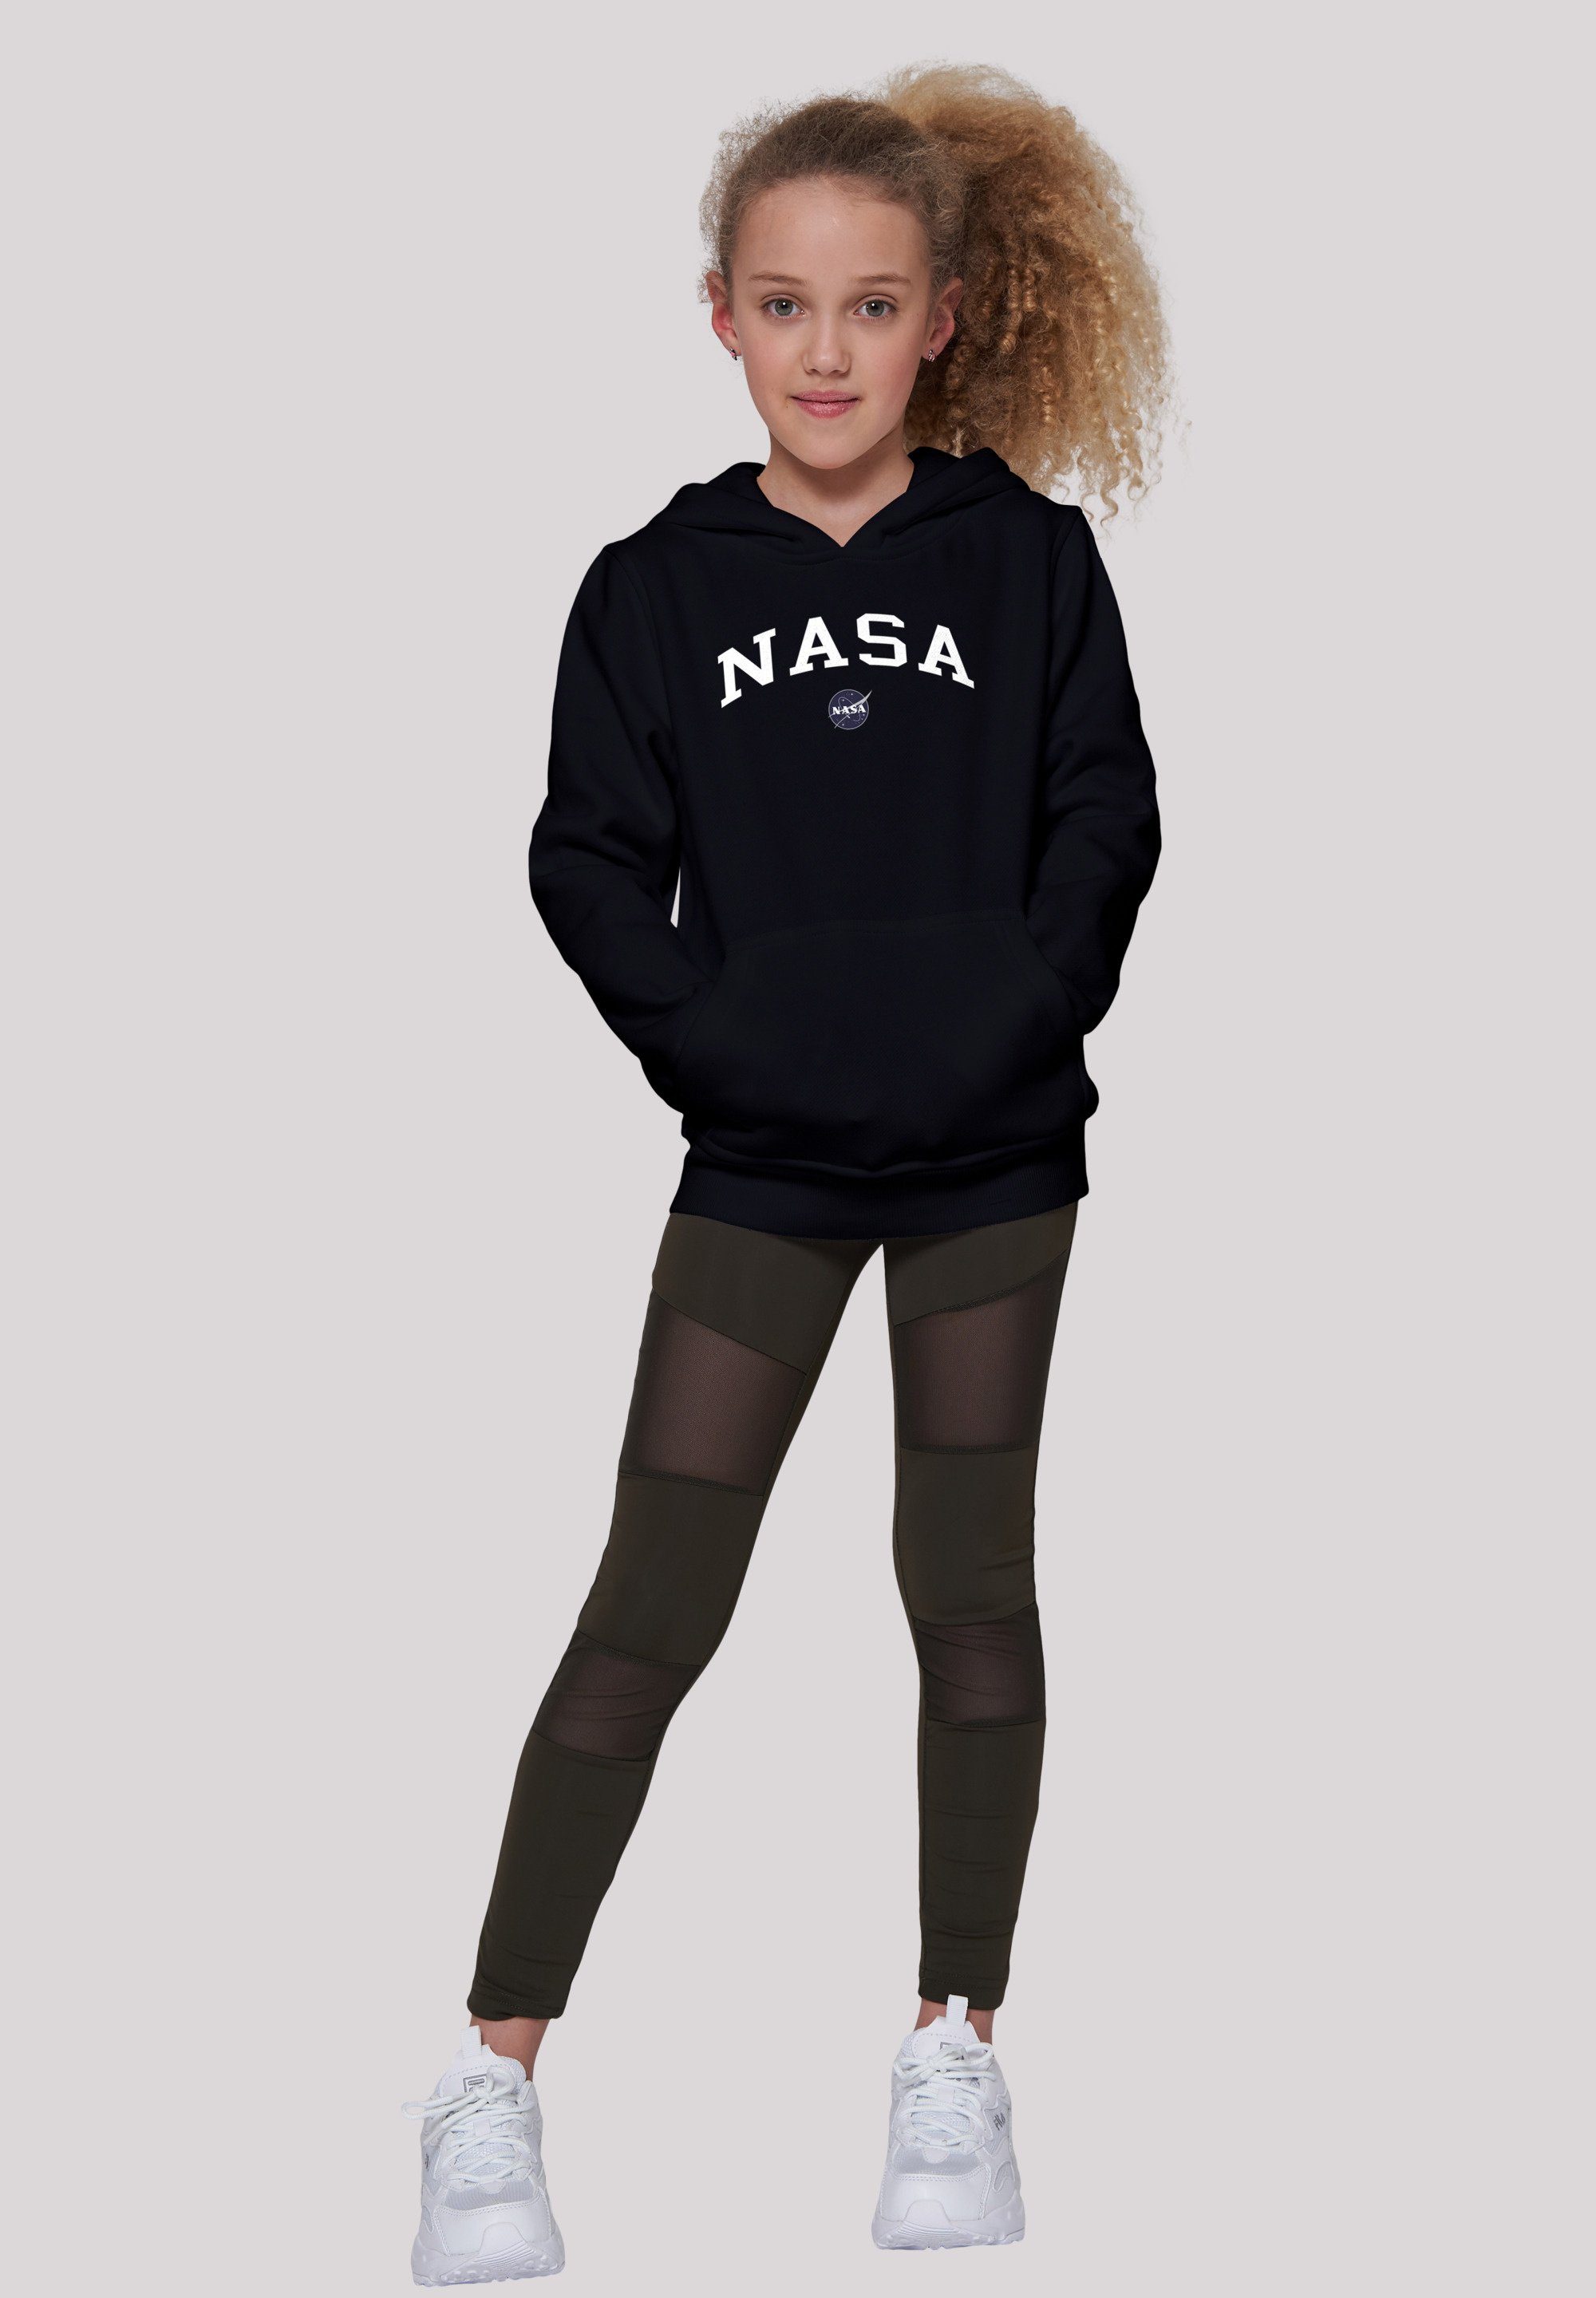 Merch,Jungen,Mädchen,Bedruckt Unisex F4NT4STIC Logo Sweatshirt NASA Kinder,Premium Collegiate